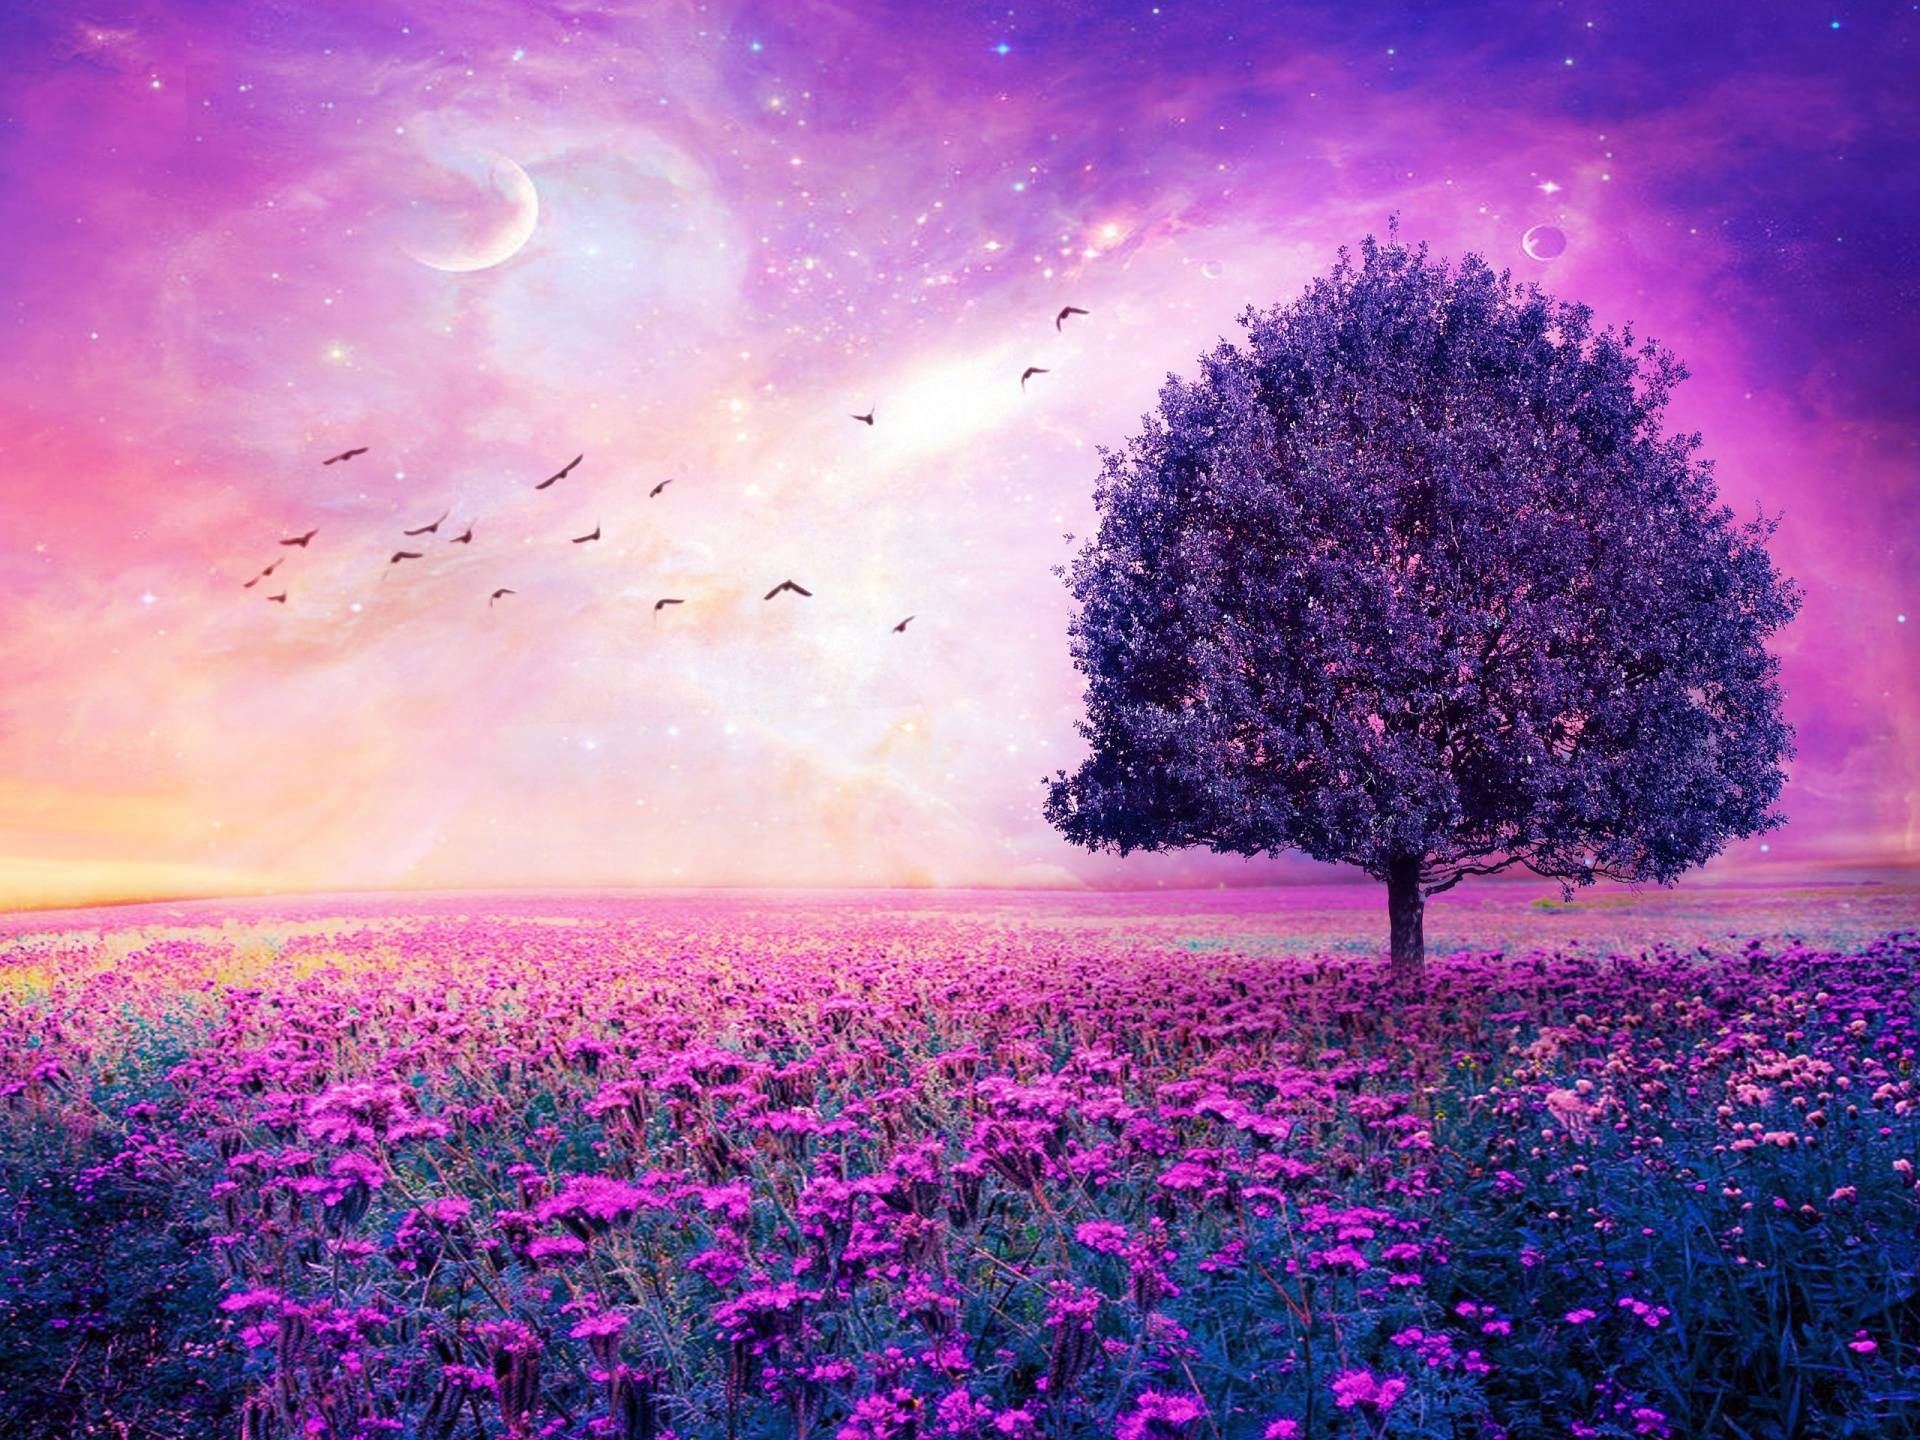 Purple Flowers Field Art Tree HD Wallpapers - High Definition ...